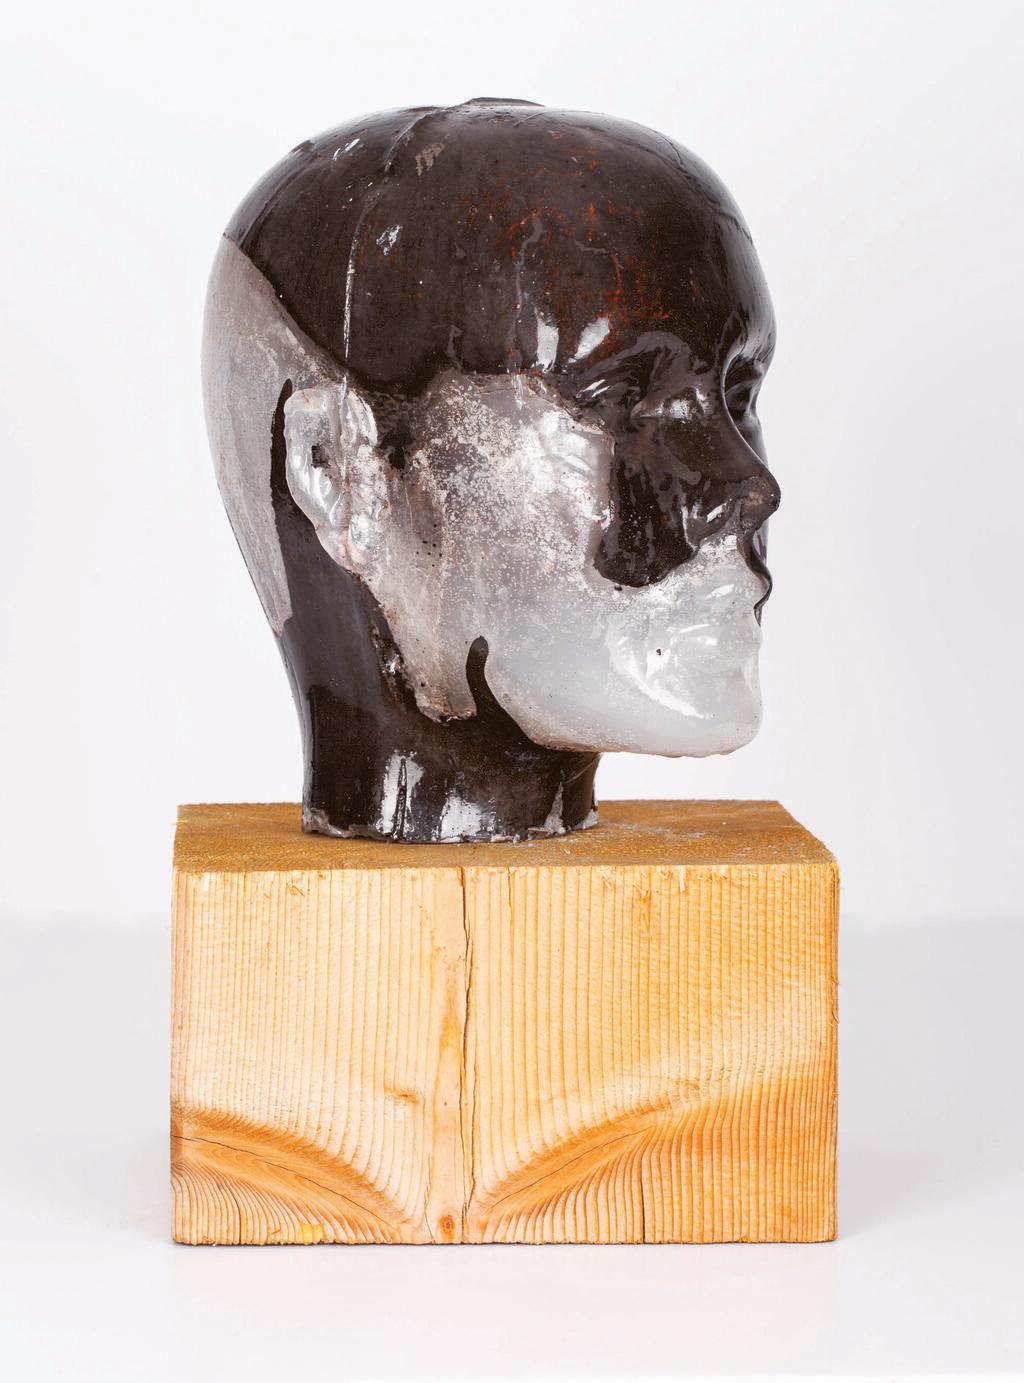 אחד הפסלים של רינת שיוצגו בתערוכה. השלמות שבחוסר השלמות